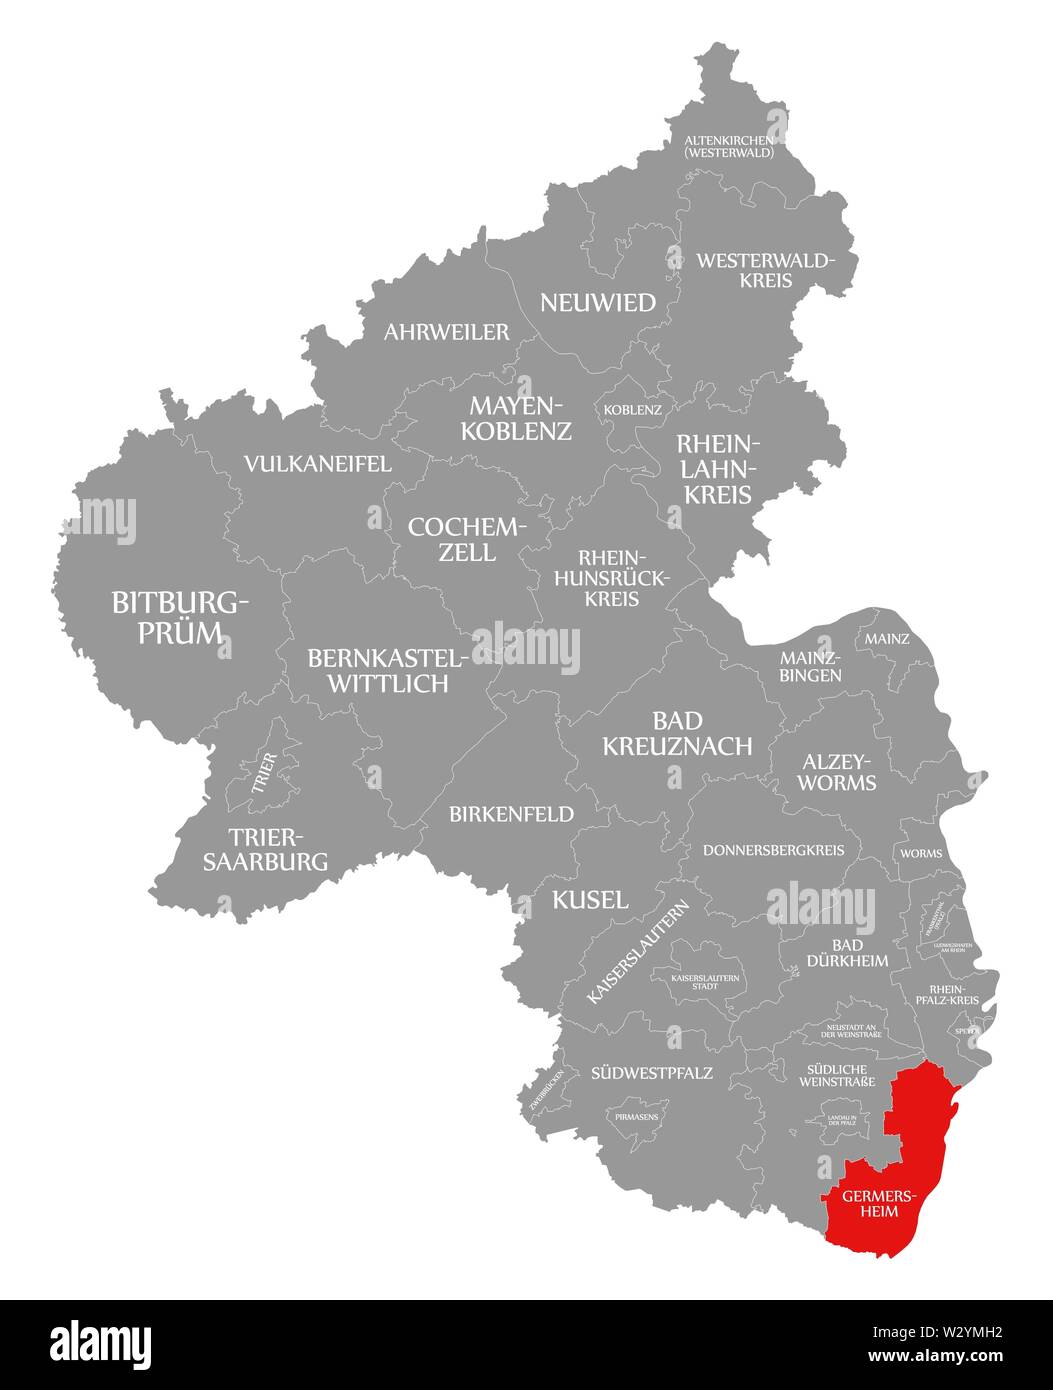 Germersheim evidenziata in rosso nella mappa della Renania Palatinato DE Foto Stock